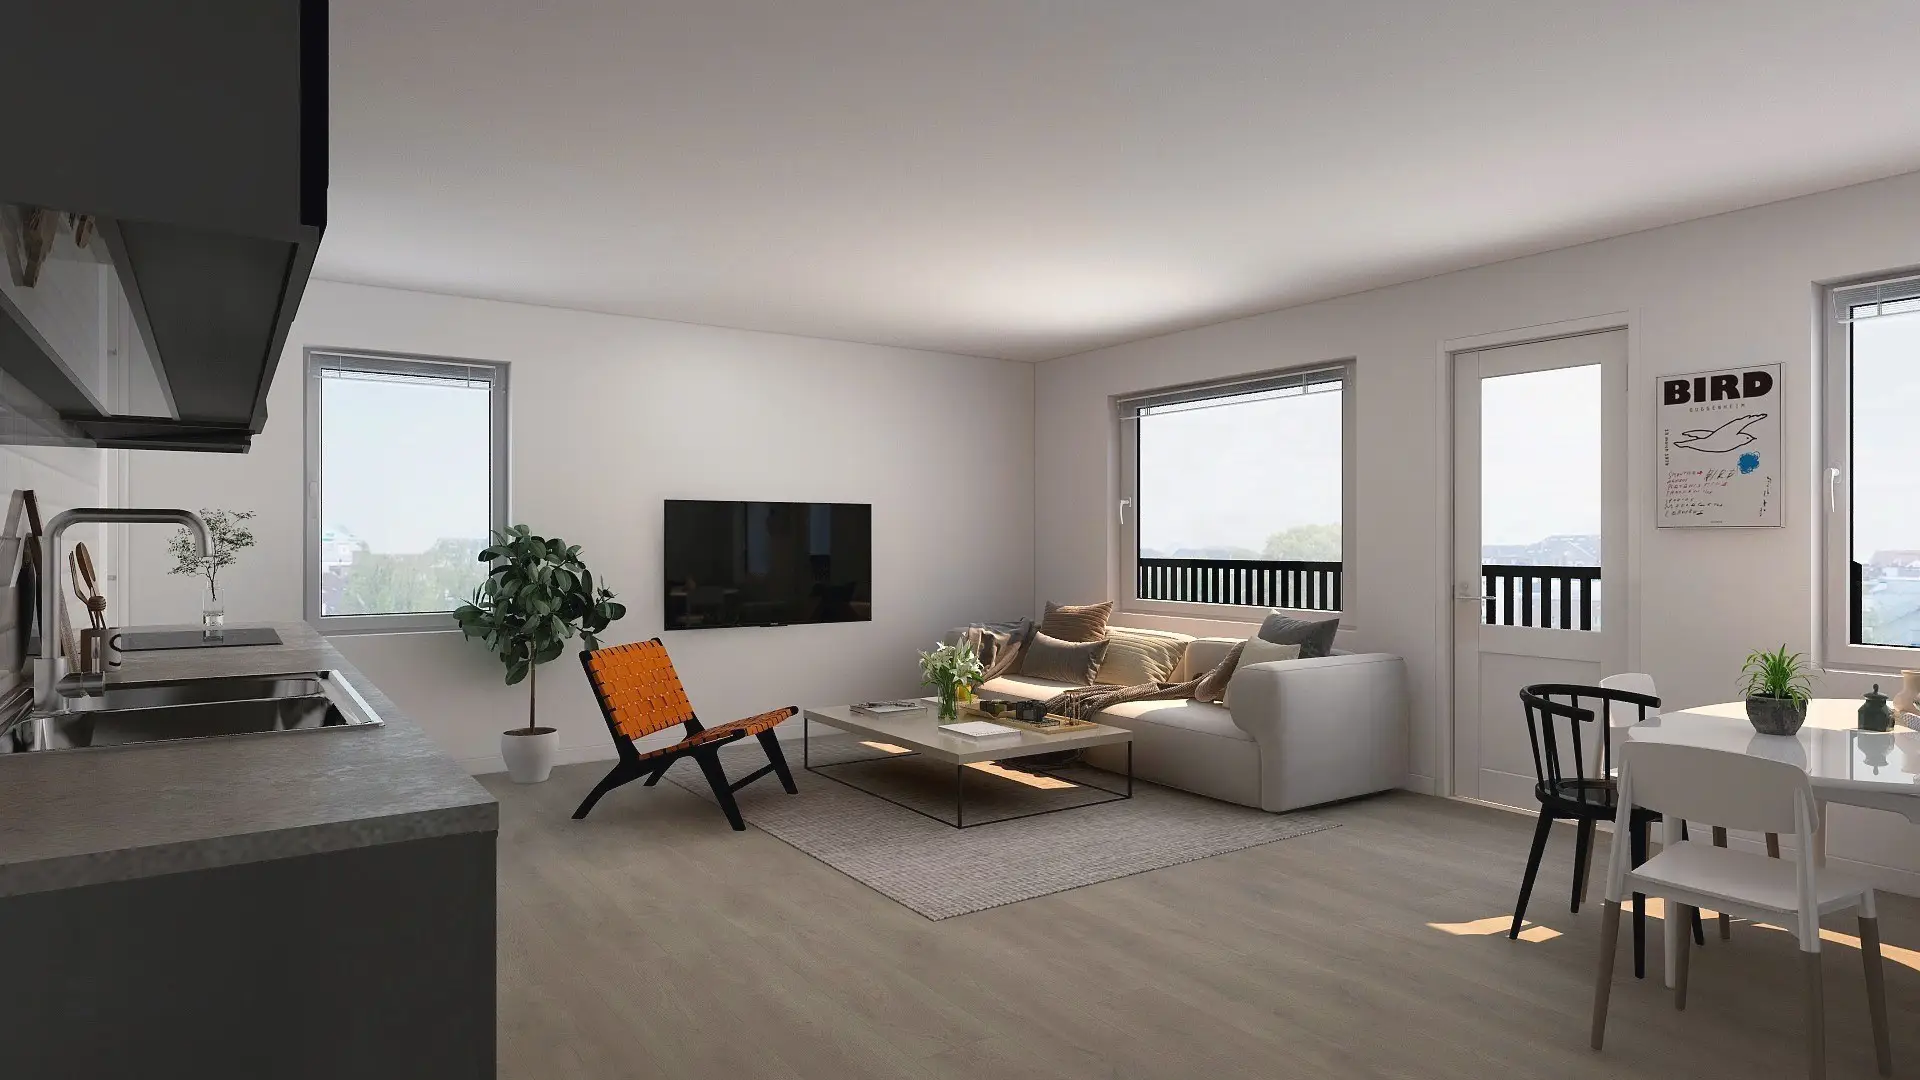 Vardagsrum med öppet kök, soffa, TV, matbord och stora fönster. Stilren, minimalistisk inredning med krukväxt och väggkonst.